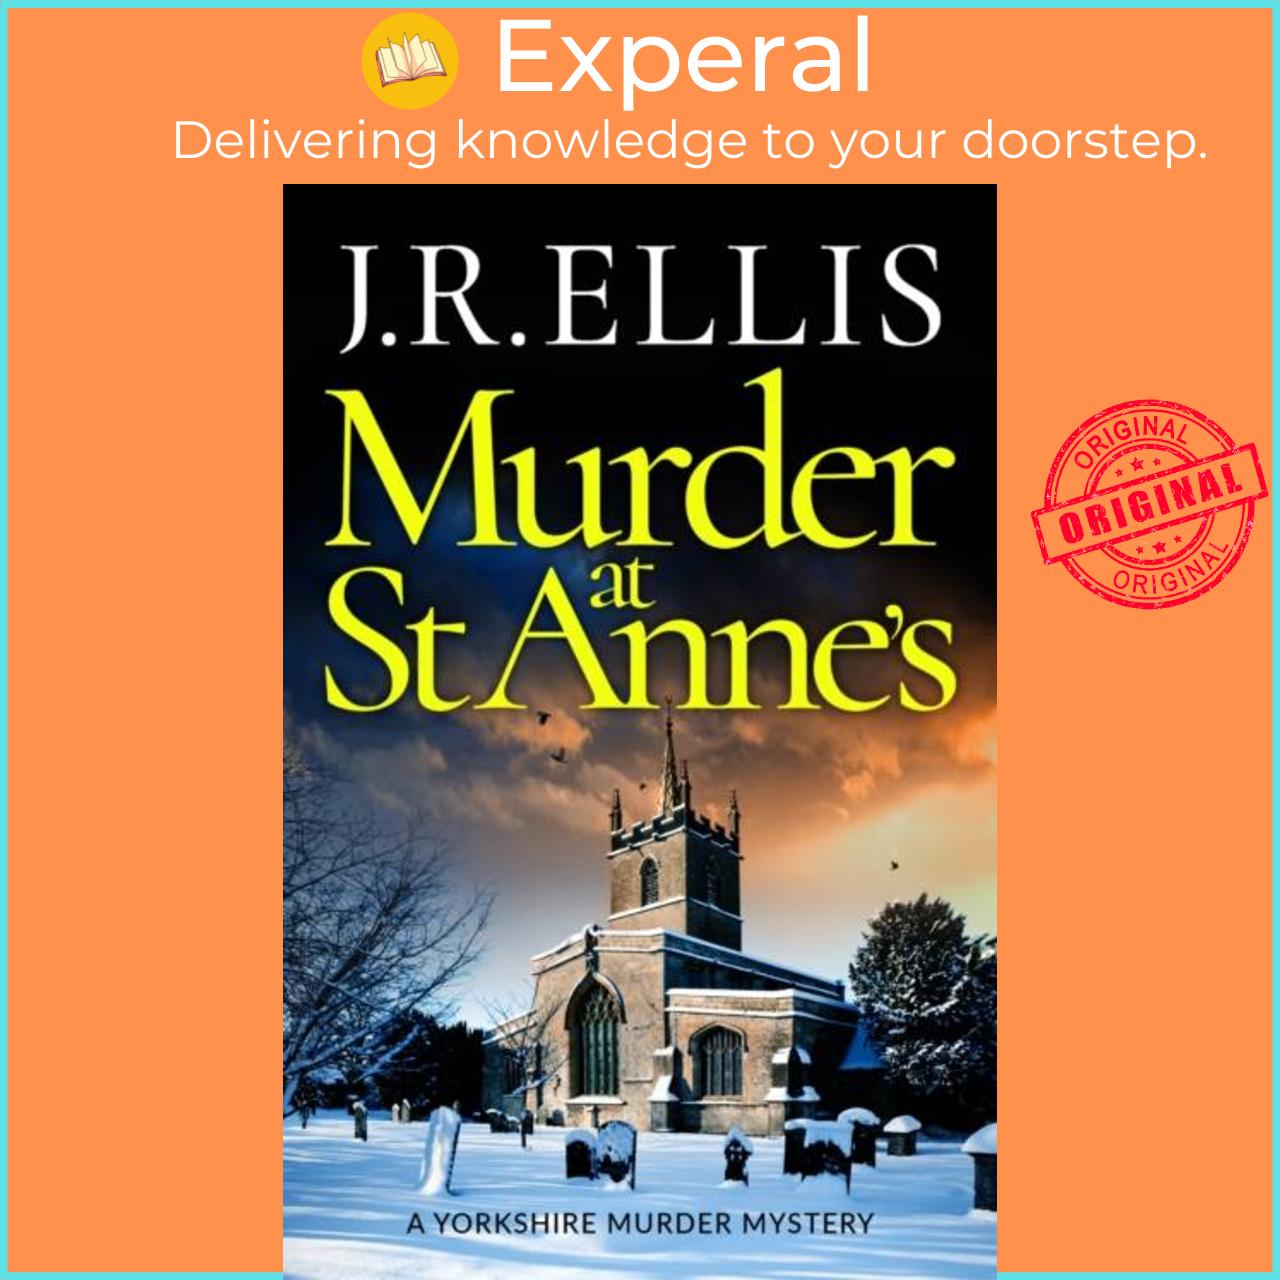 Sách - Murder at St Anne's by J. R. Ellis (UK edition, paperback)